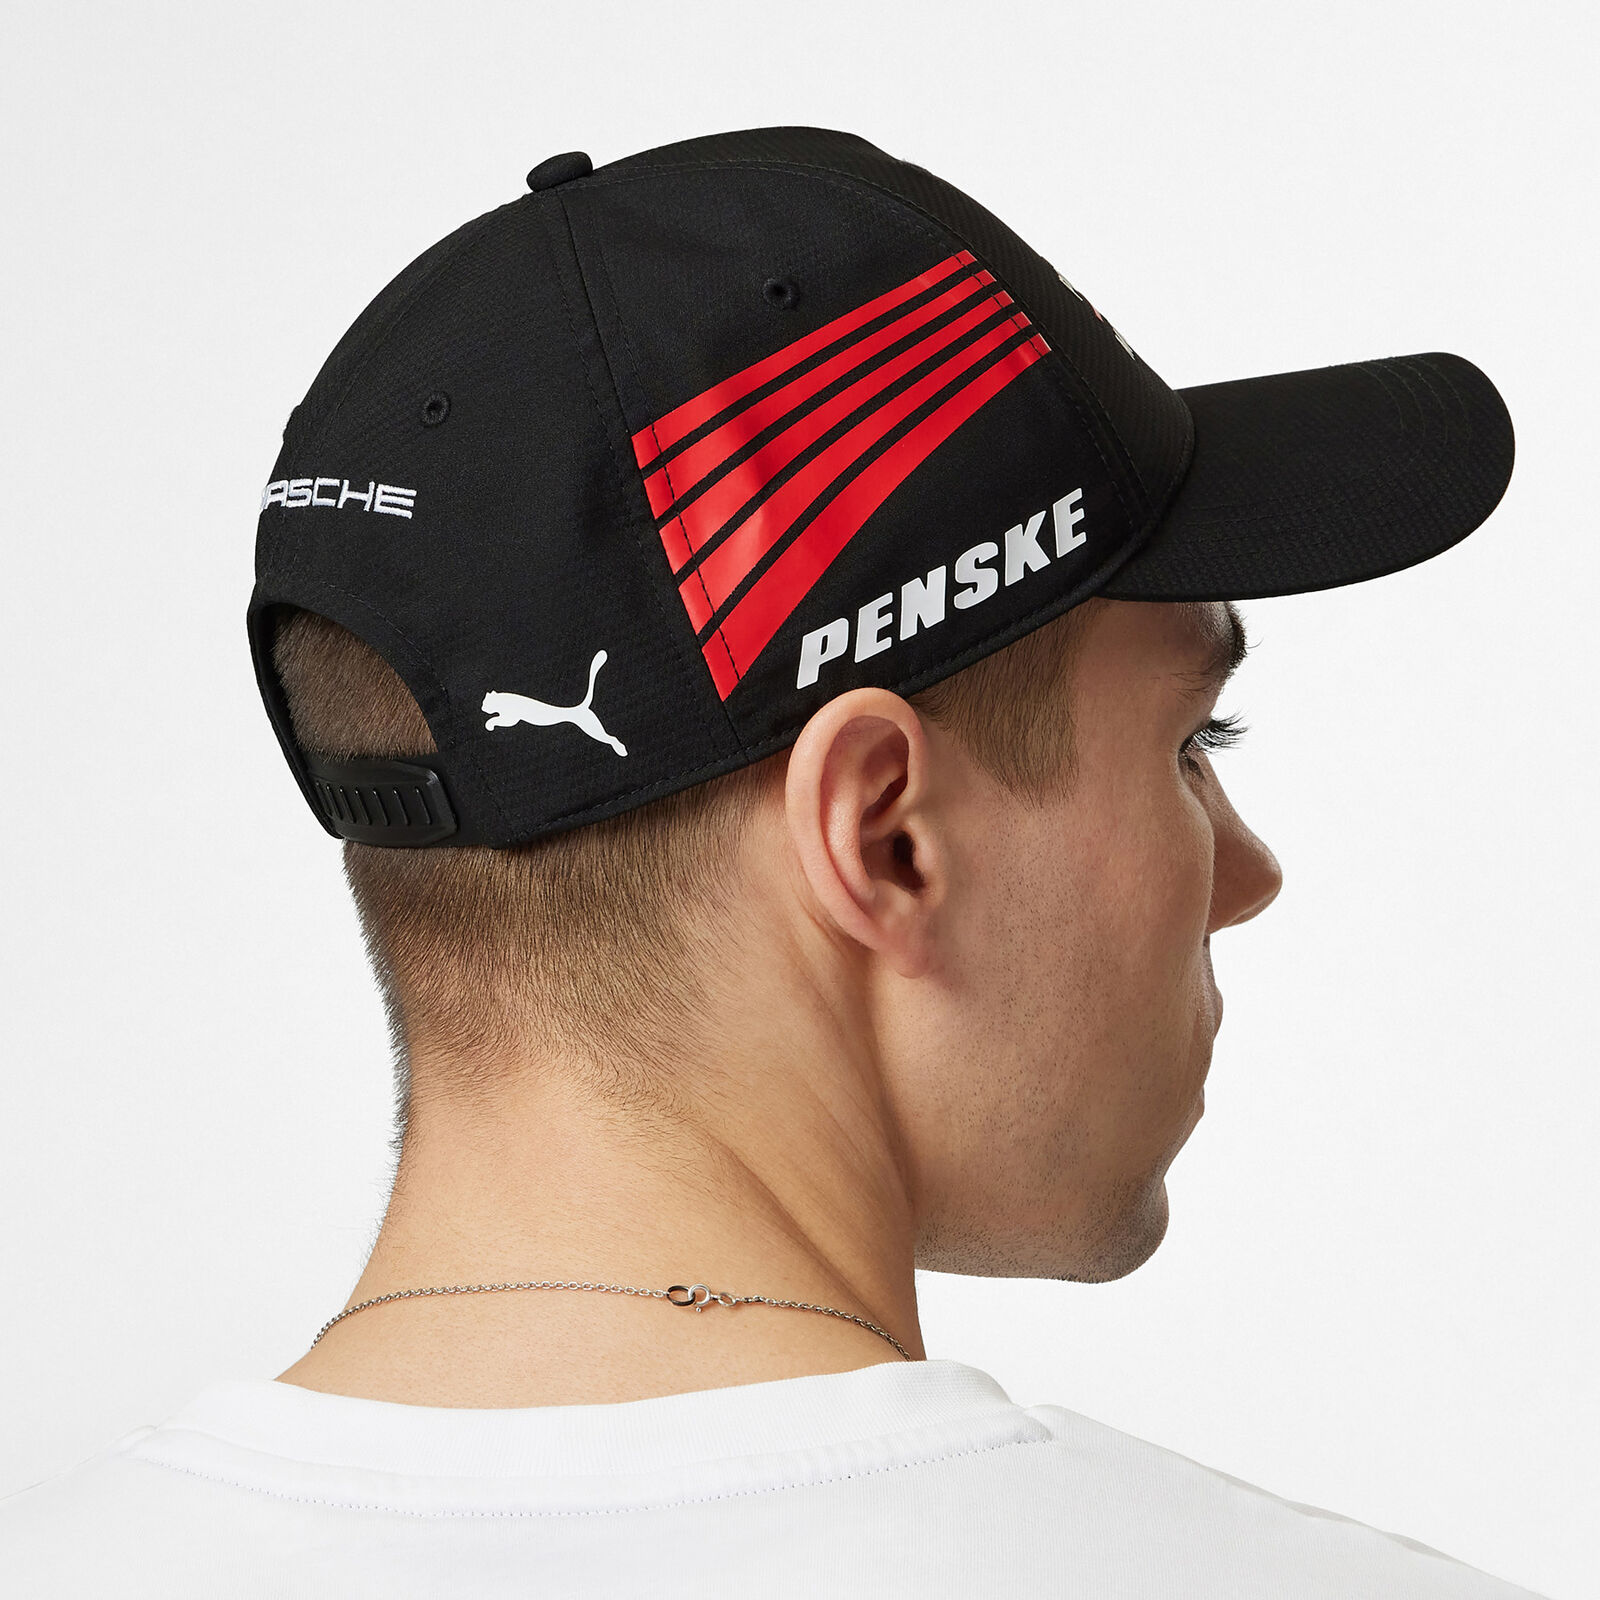 Casquette d'équipe Penske - Porsche Motorsport